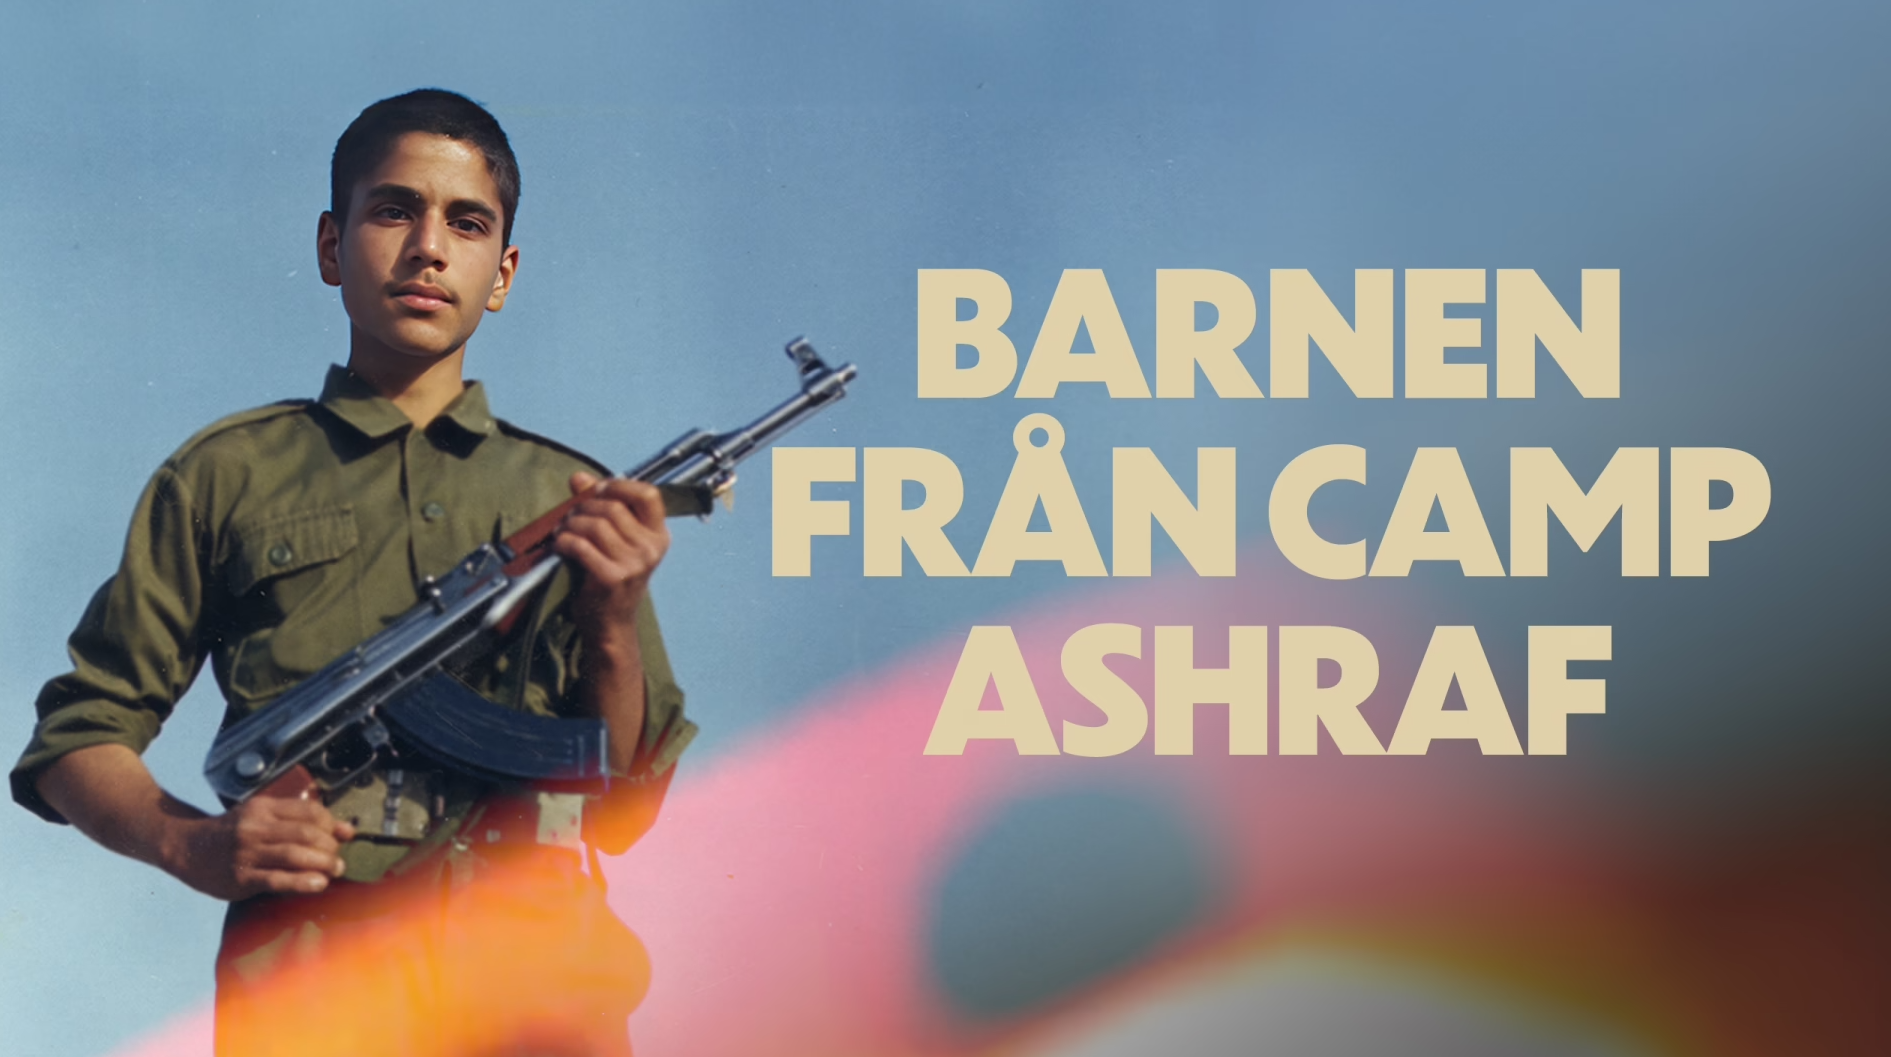 Ung pojke med militäruniform och automatvapen i händerna tittar in i kameran. Text i bild: 